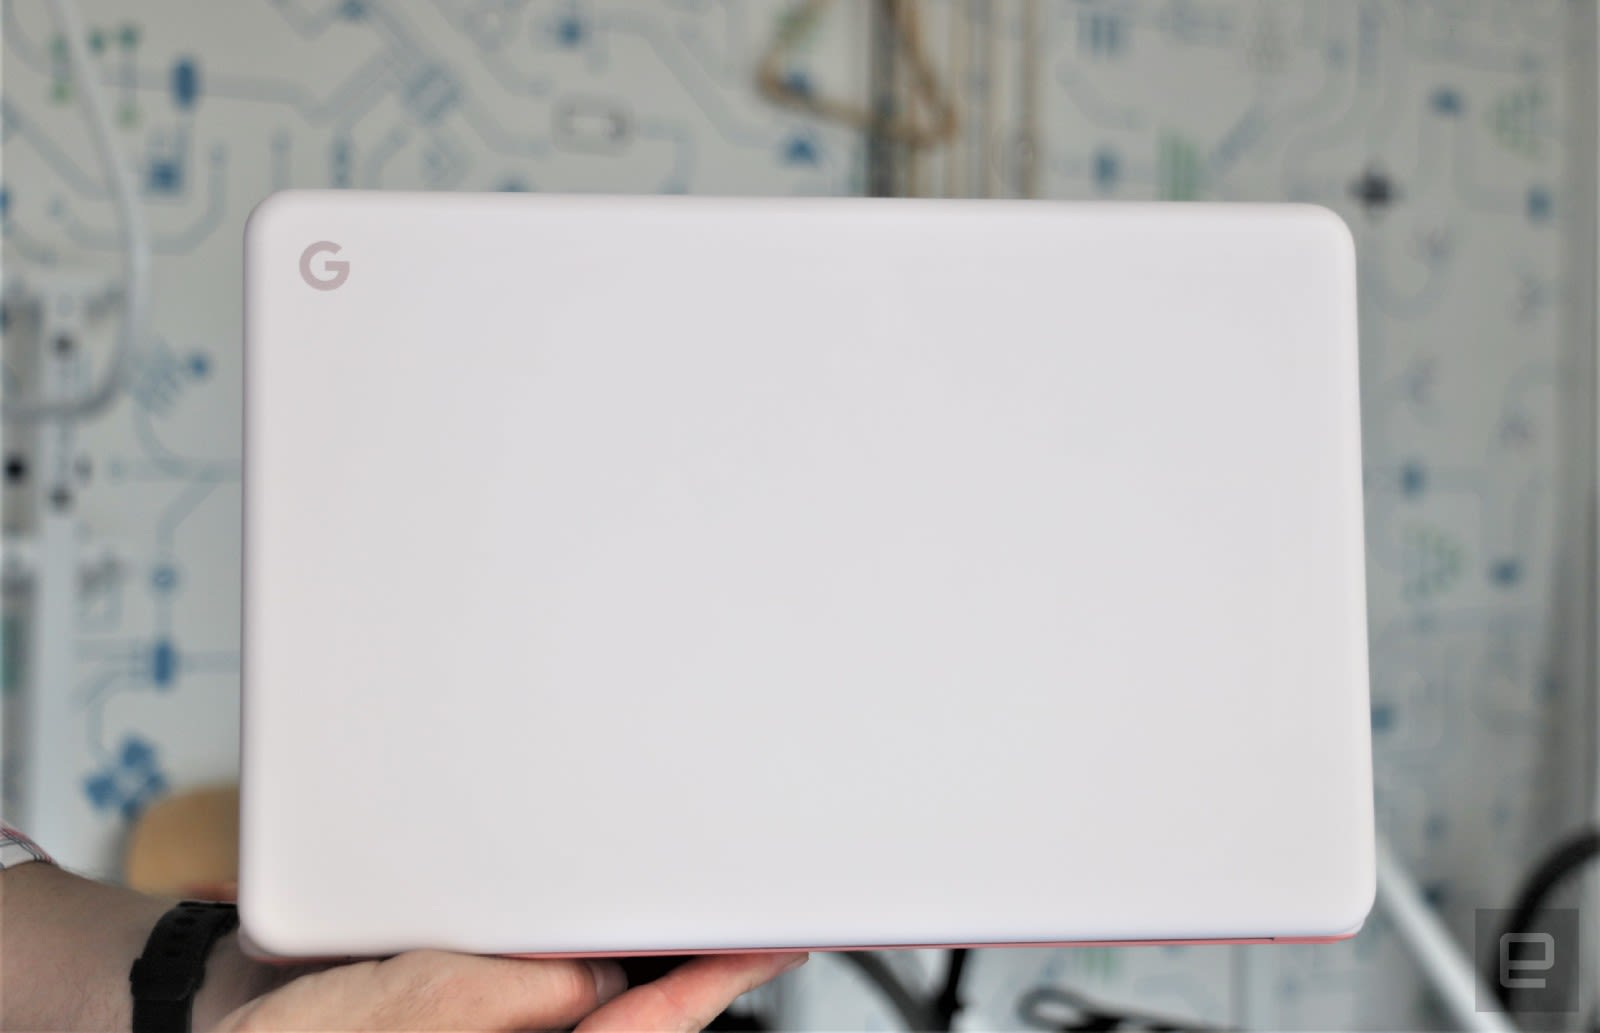 Google Pixelbook Go hands-on